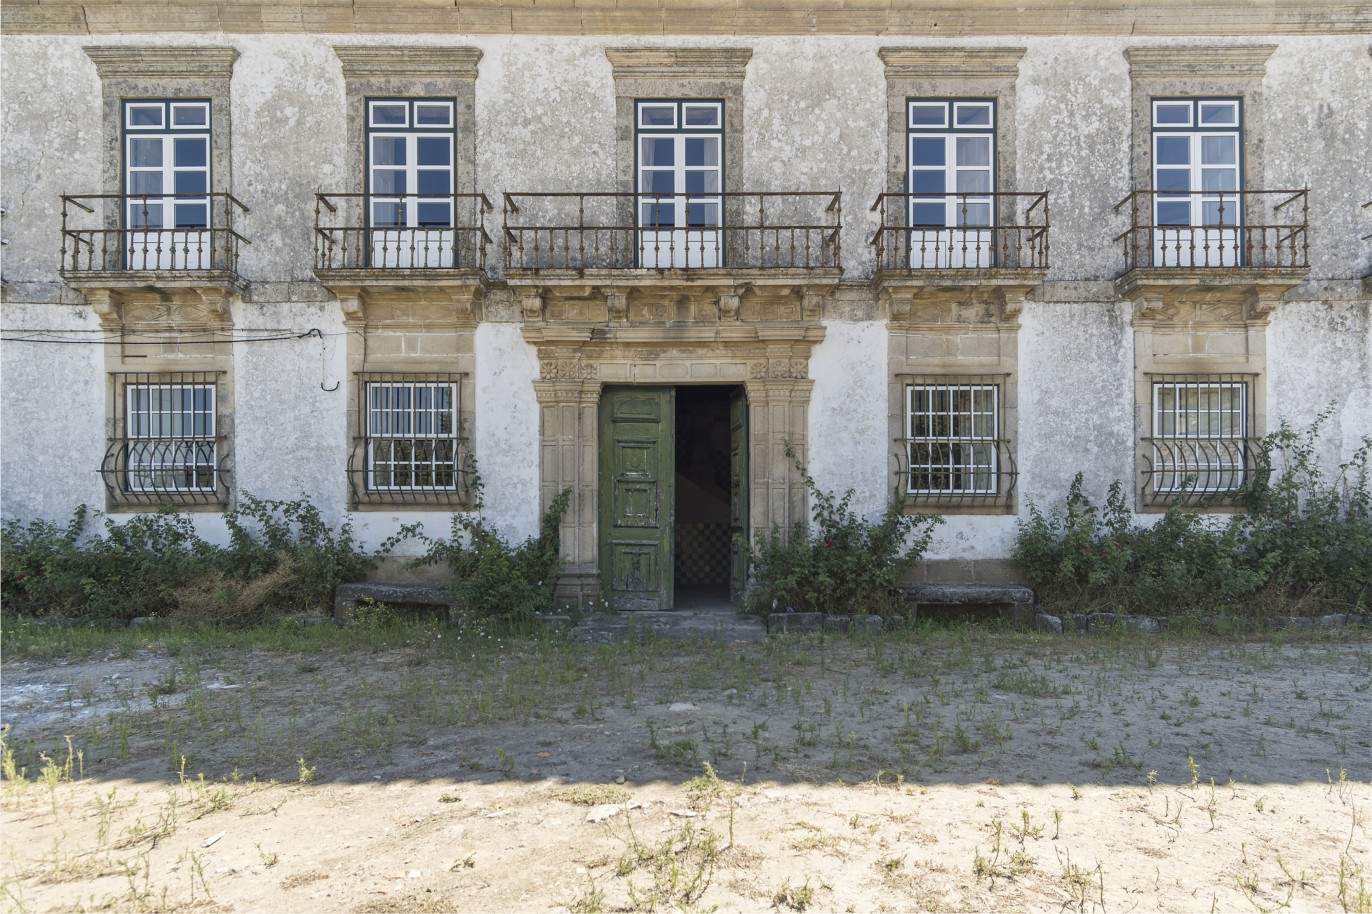 Venda: Palacete para restaurar com jardins, Lamego, Alto Douro _207358